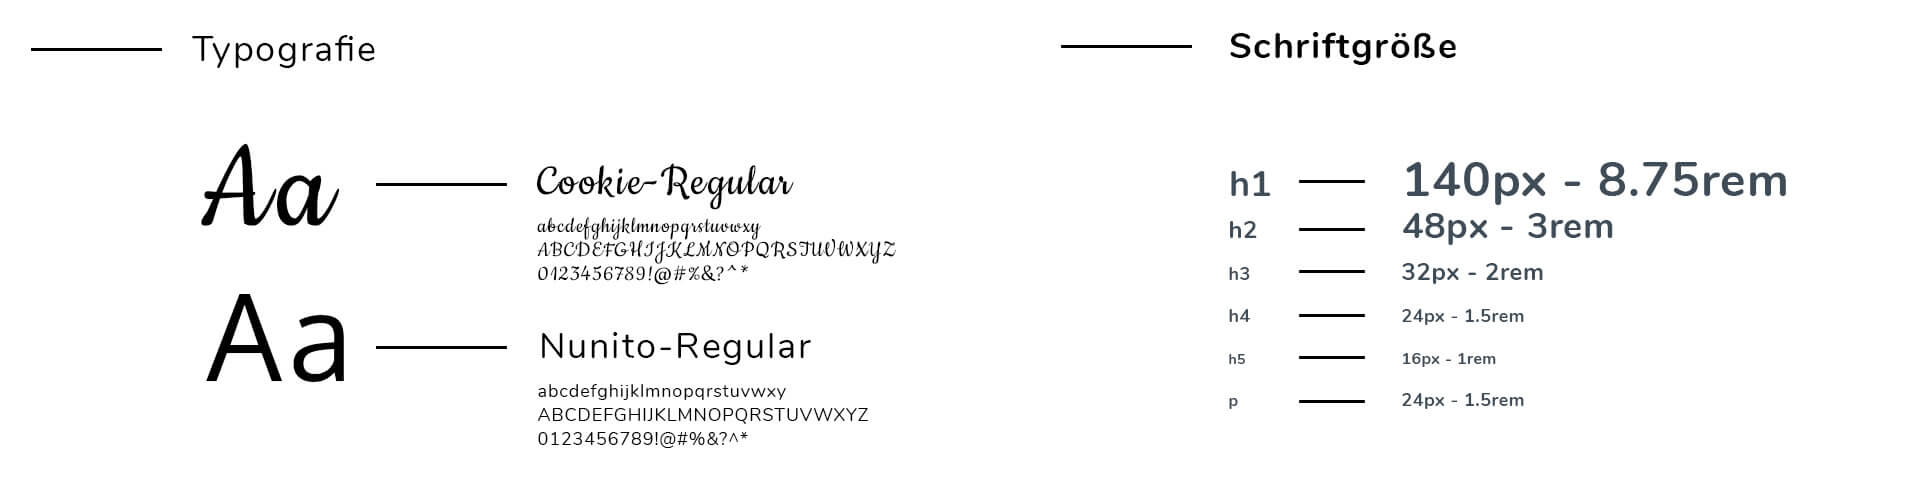 Webseiten Typografie